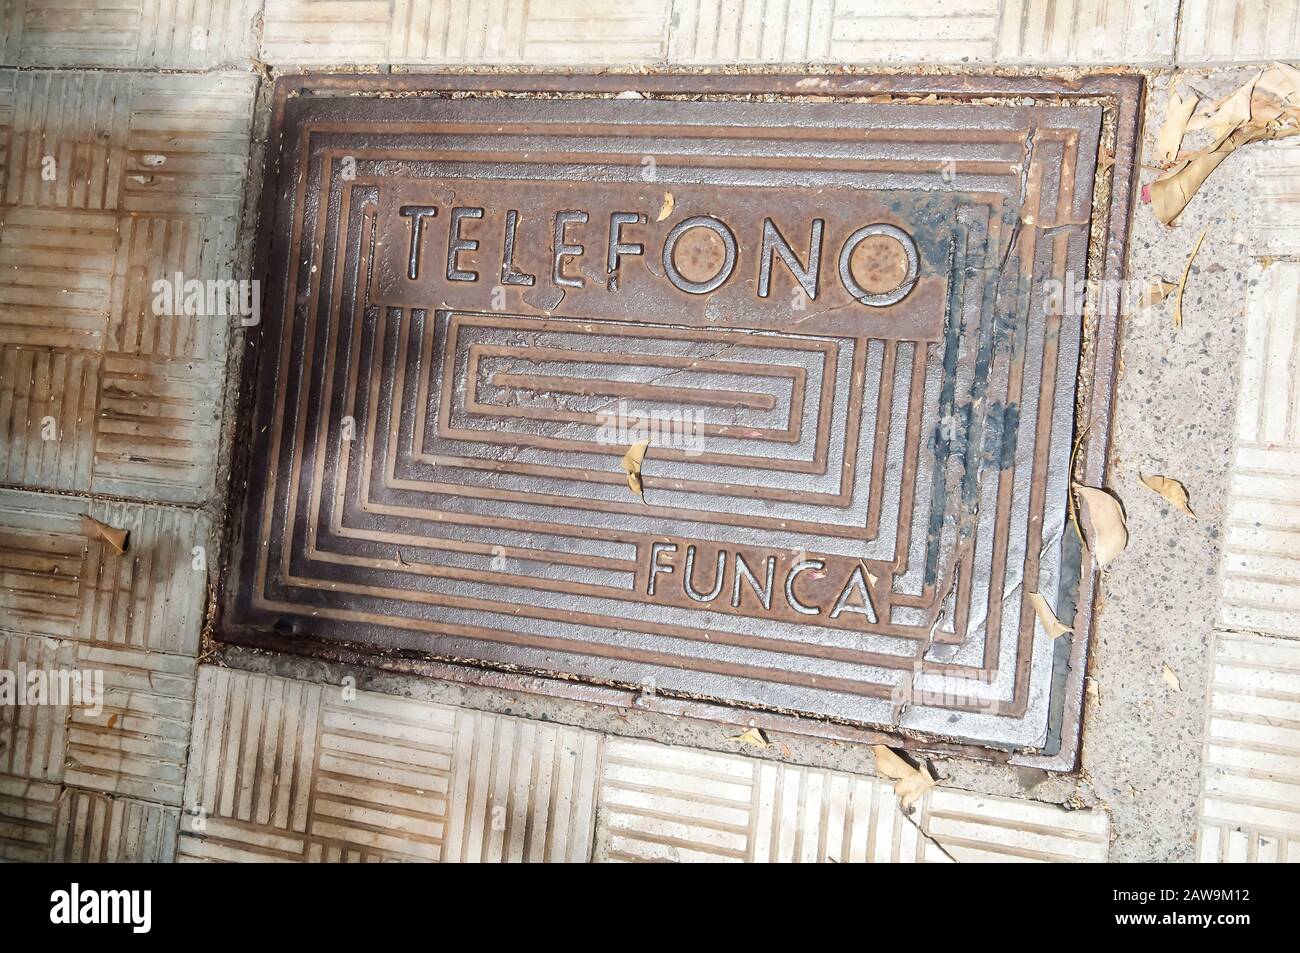 Metall-Telefono-Manhole-Abdeckung auf Teneras, Kanarischen Inseln, Spanien. Stockfoto